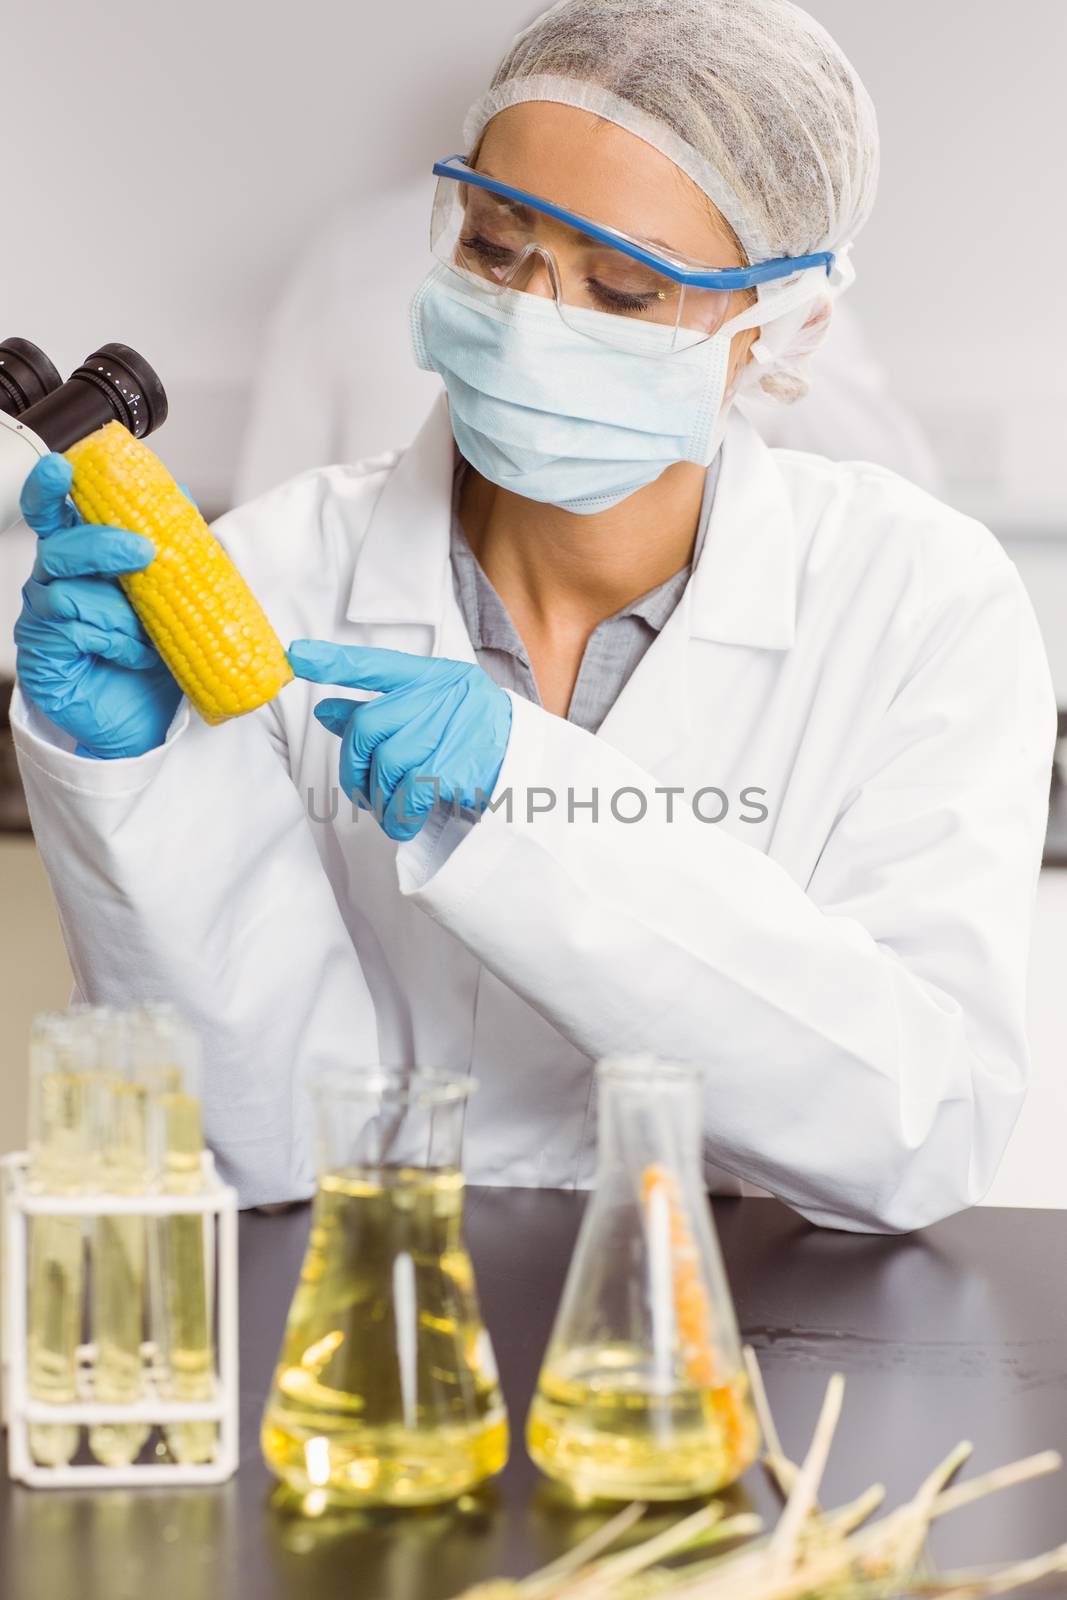 Food scientist looking at corn cob by Wavebreakmedia